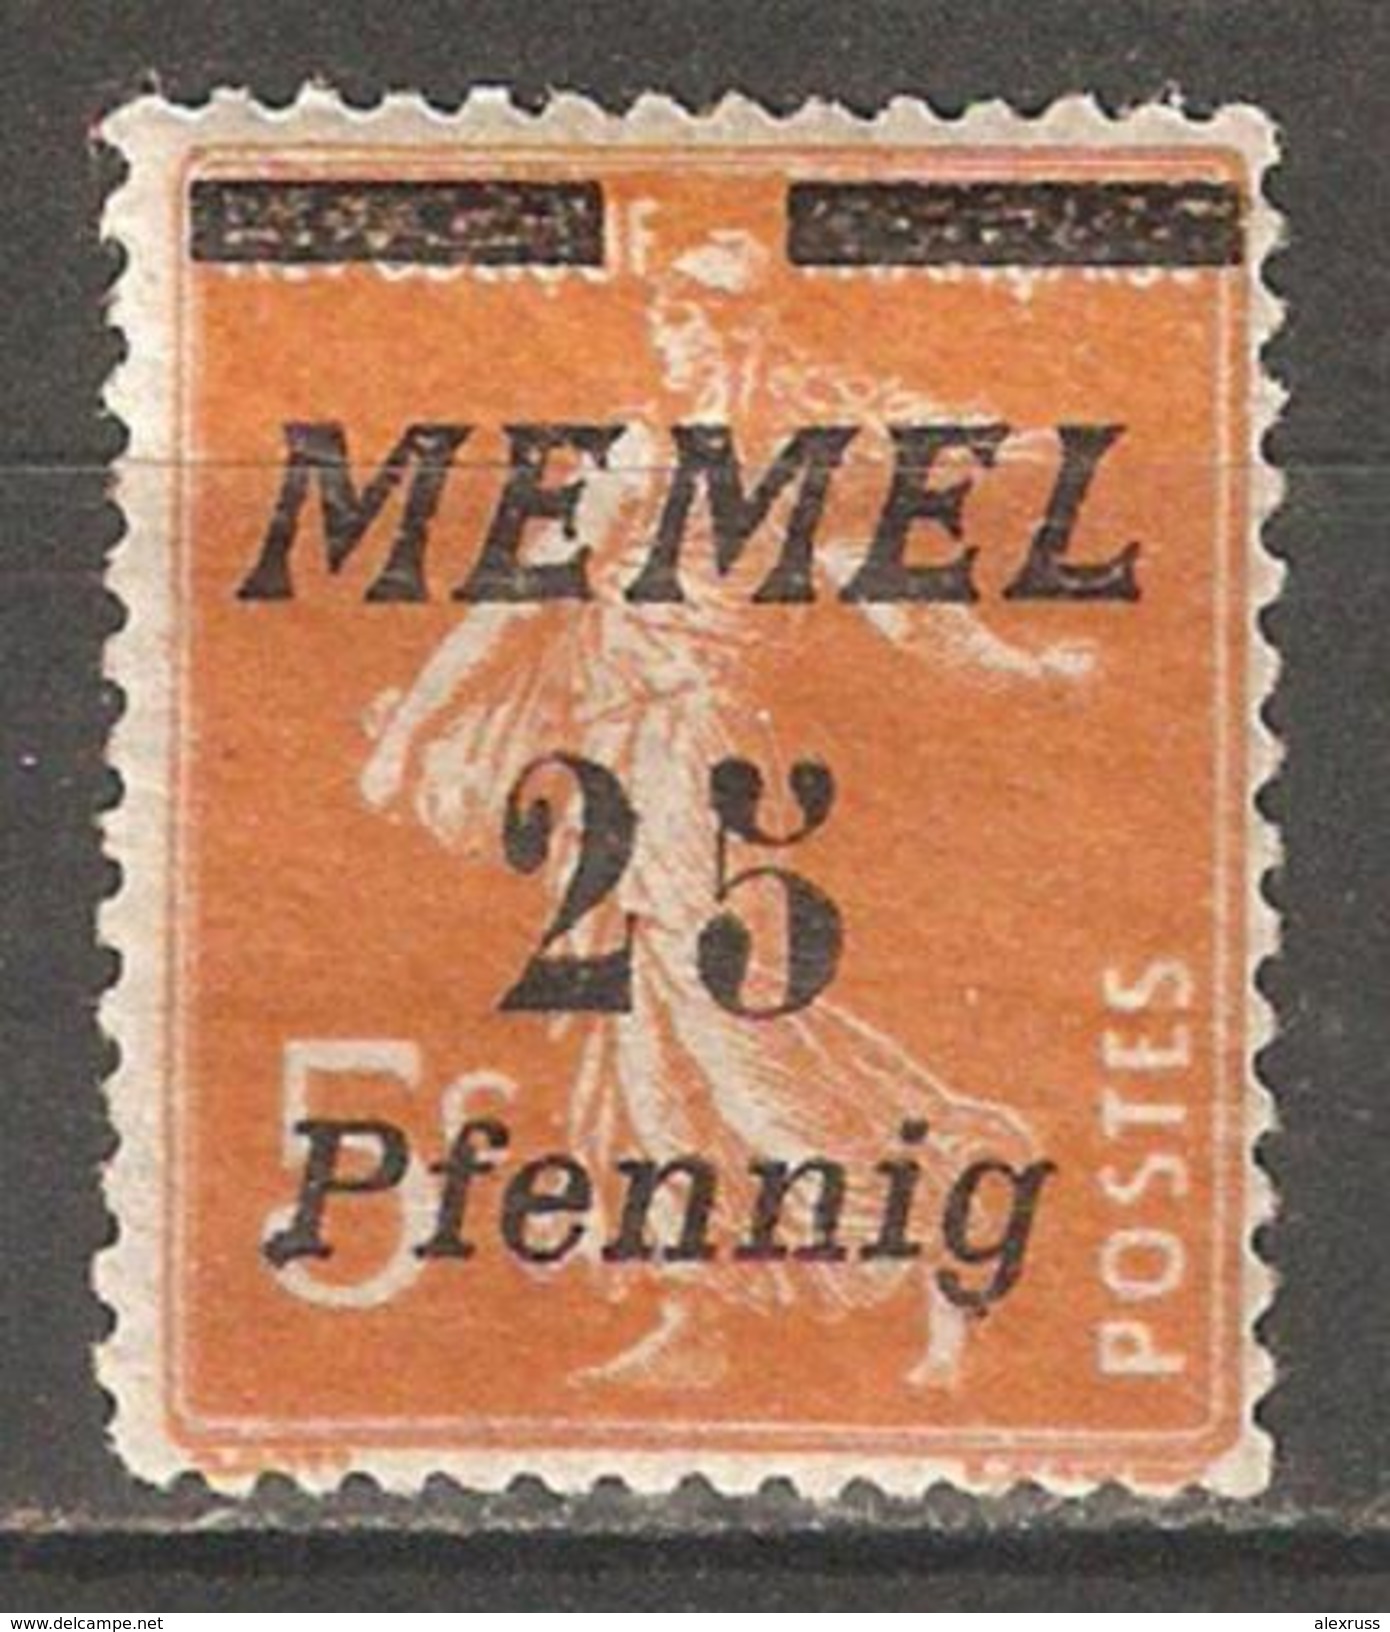 Memel 1922, 25pf On 5c, Scott # 56*, VF Mint Hinged* L2 (A-7) - Neufs